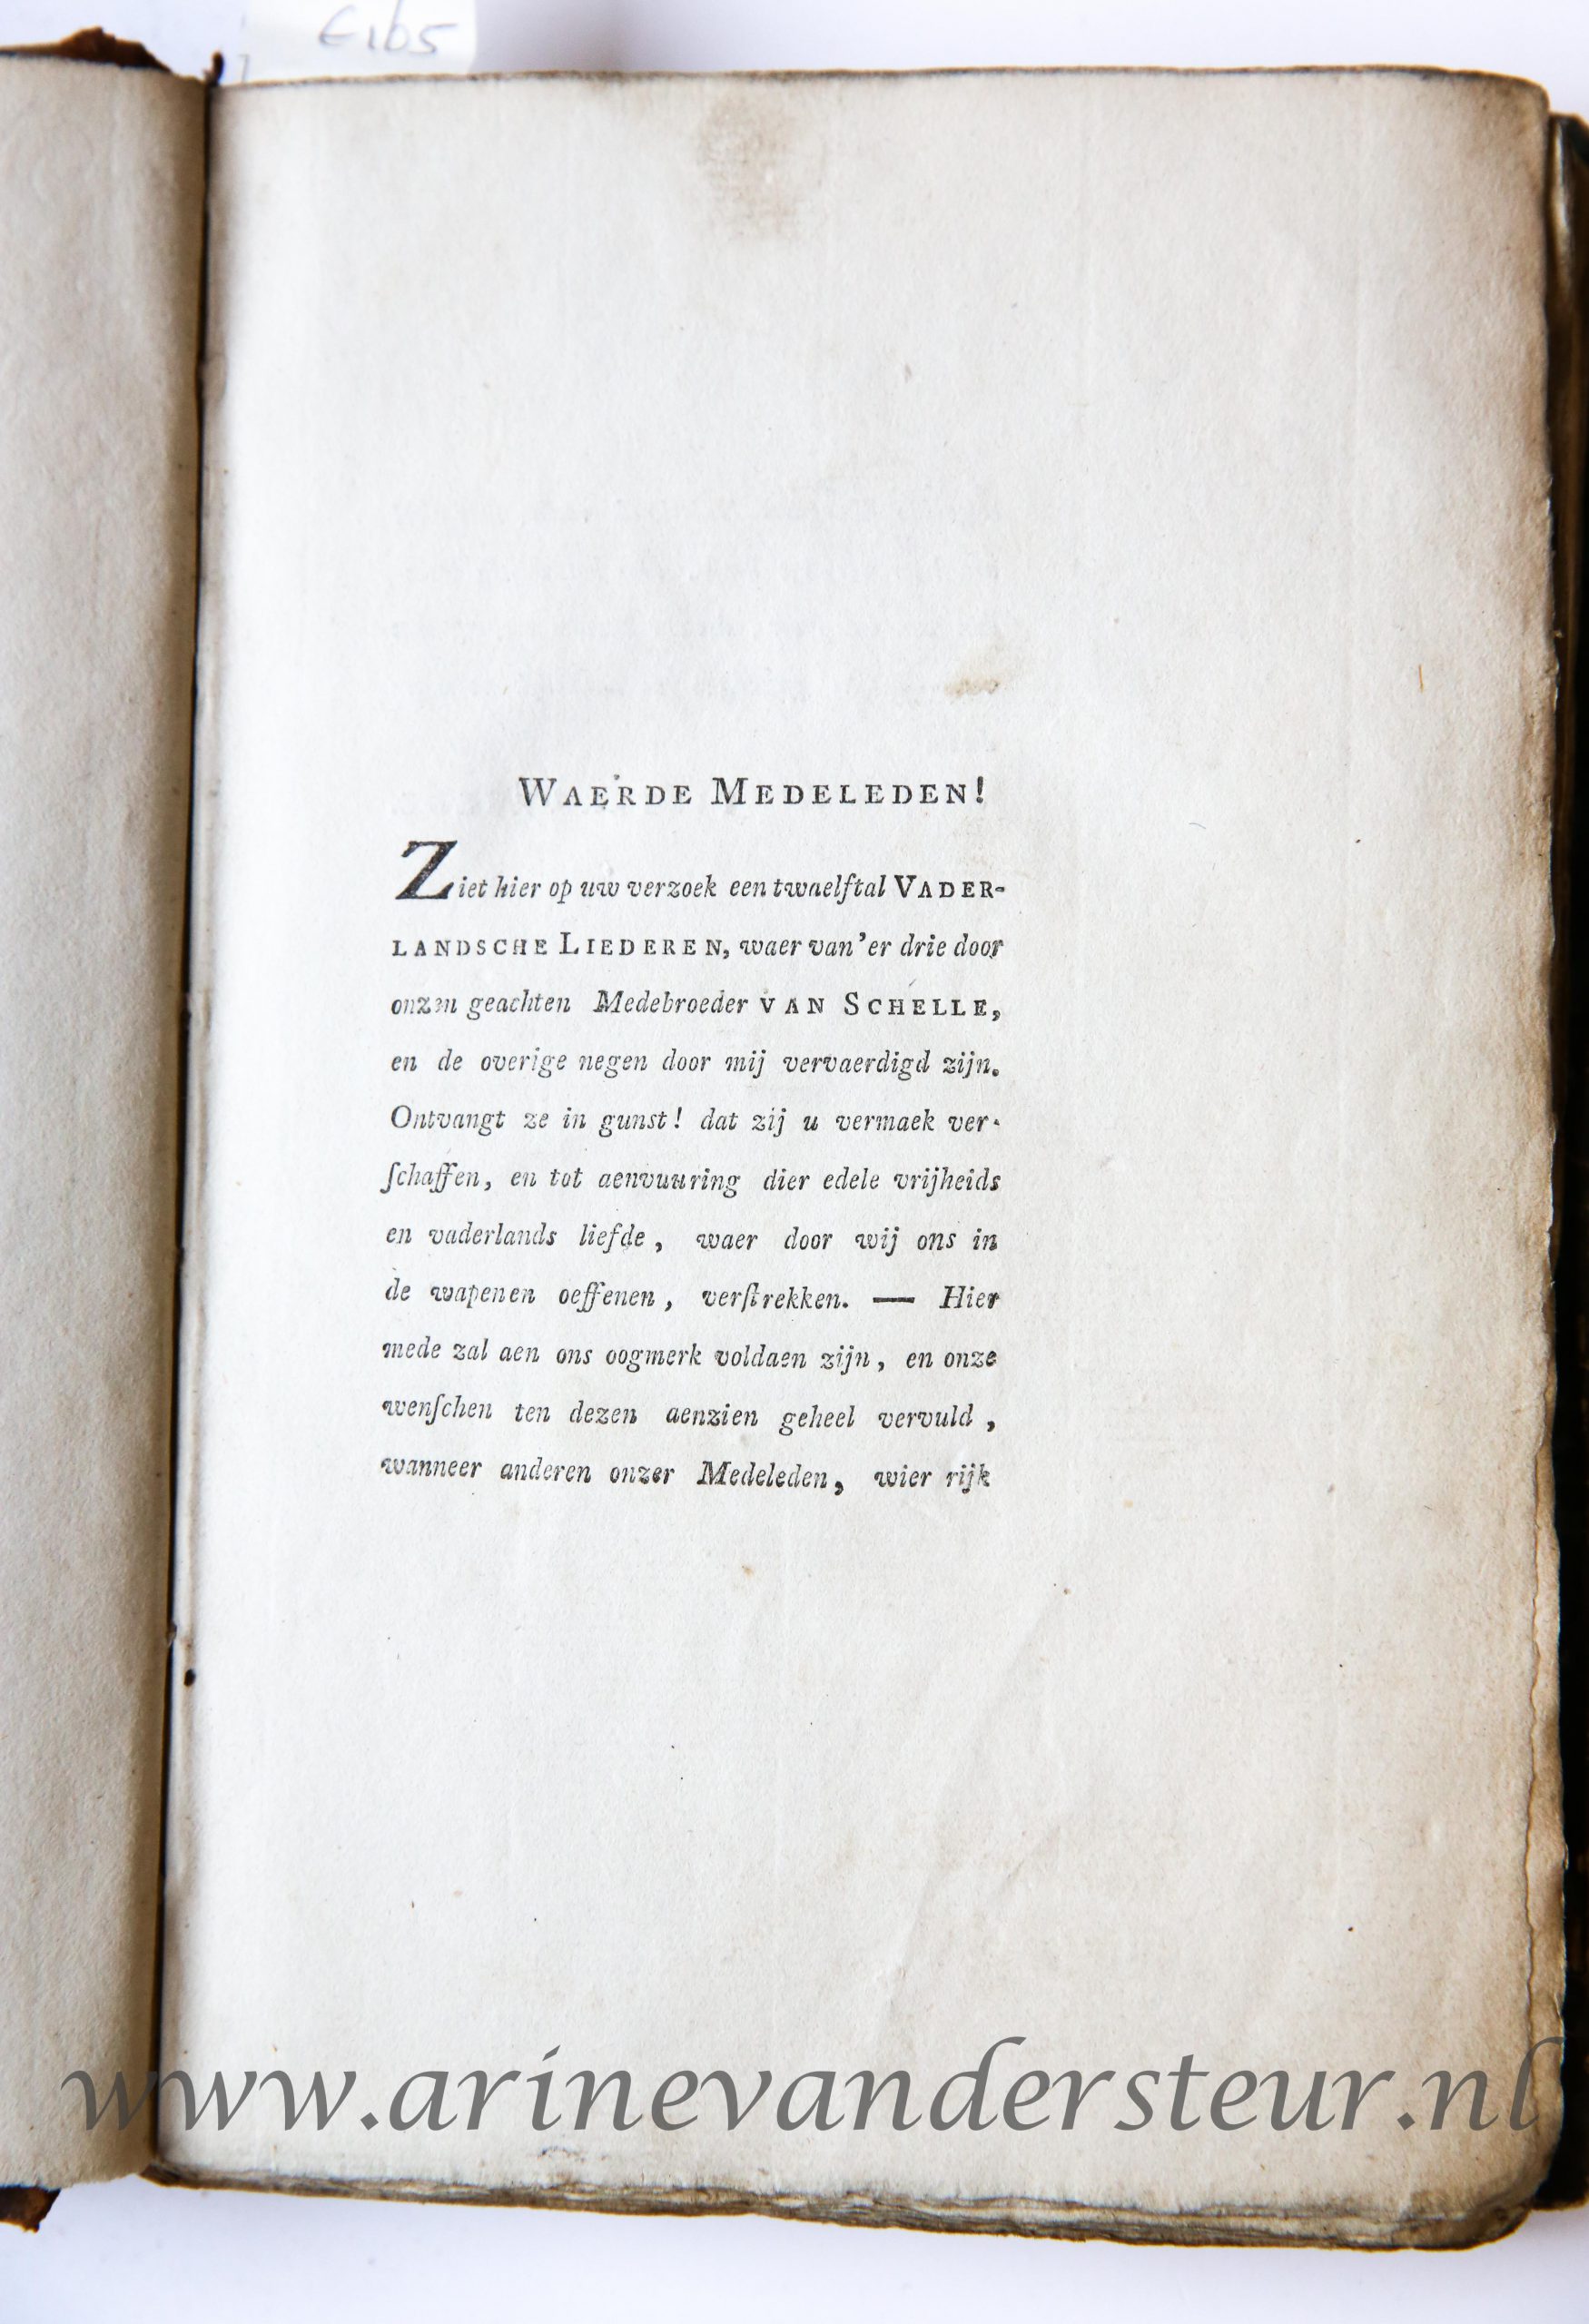 Vaderlandsche liederen, voor het genootschap van wapenhandel, ten spreuke voerende: Voor vrijheid en vaderland, te Leyden, Leiden, C. Heyligert, 1784, first edition.